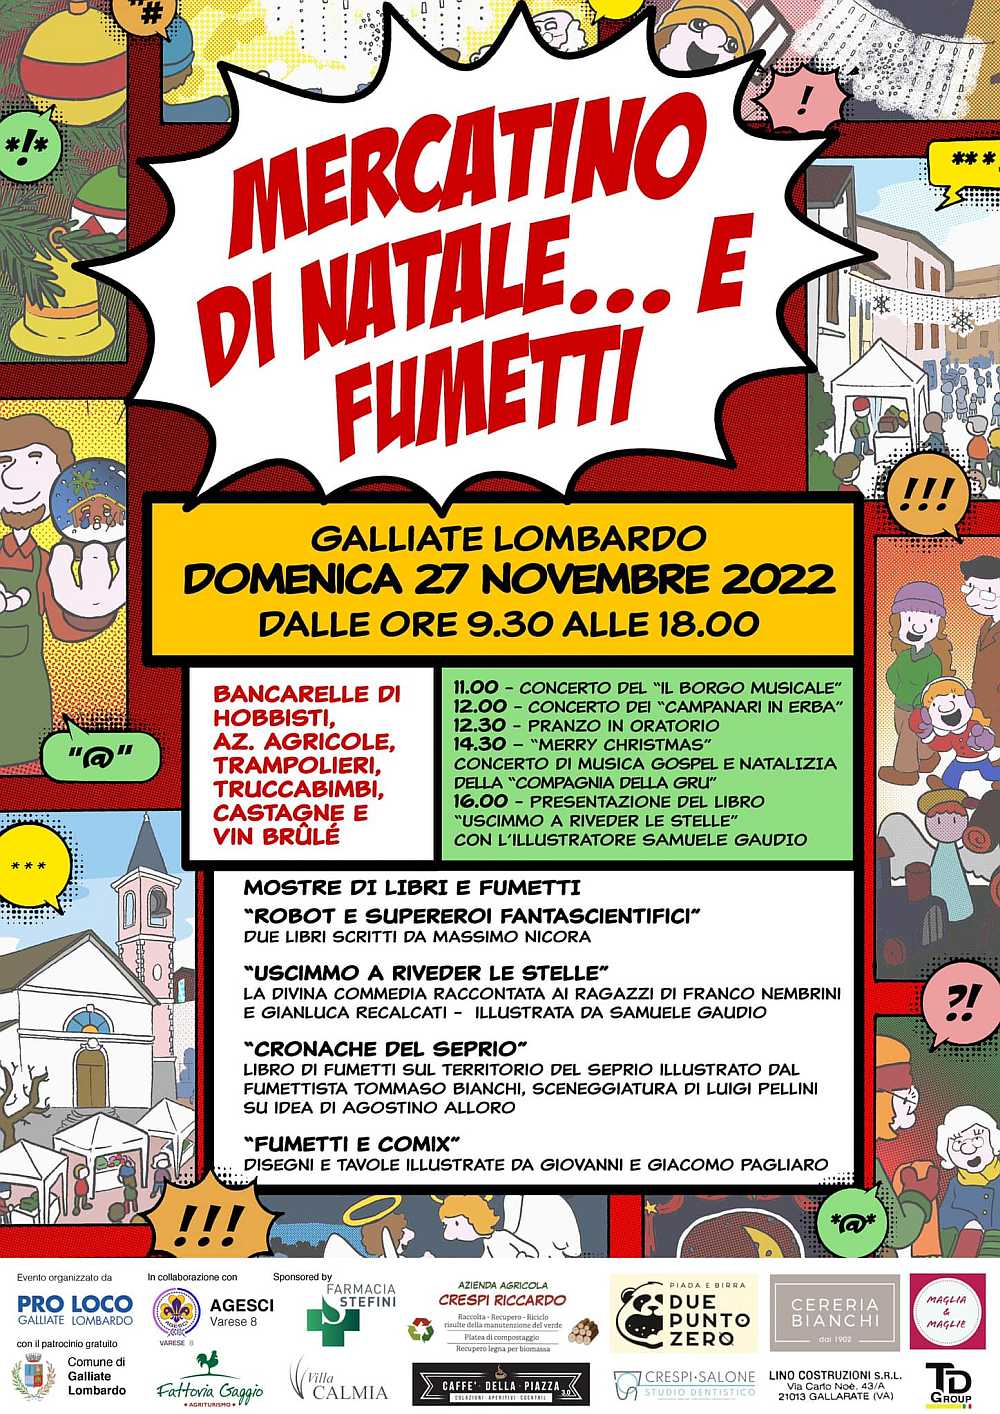 Galliate Lombardo (VA)
"Mercatino di Natale e Fumetti"
27 Novembre 2022